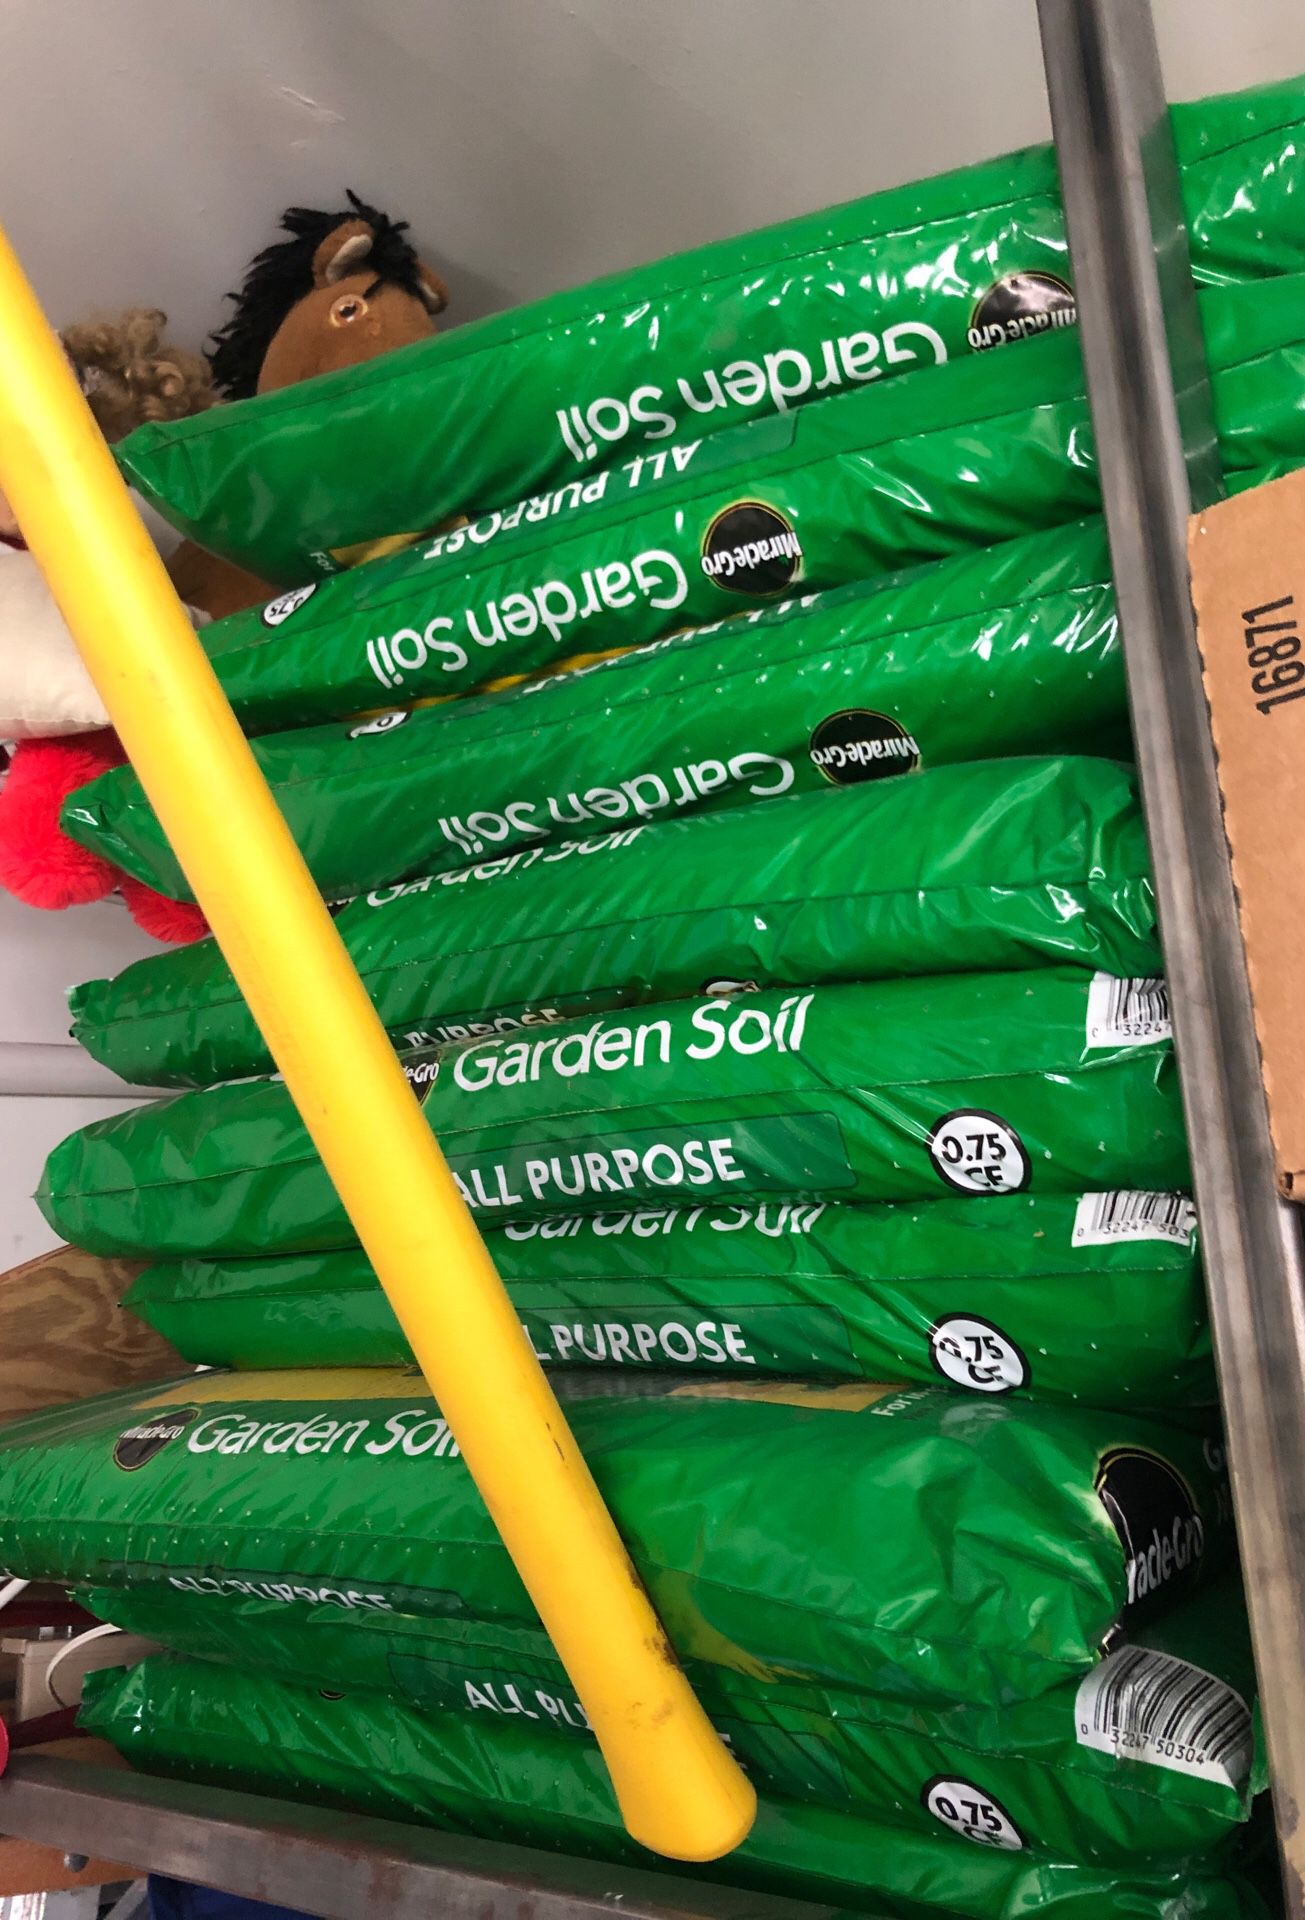 Garden soil from Home Depot